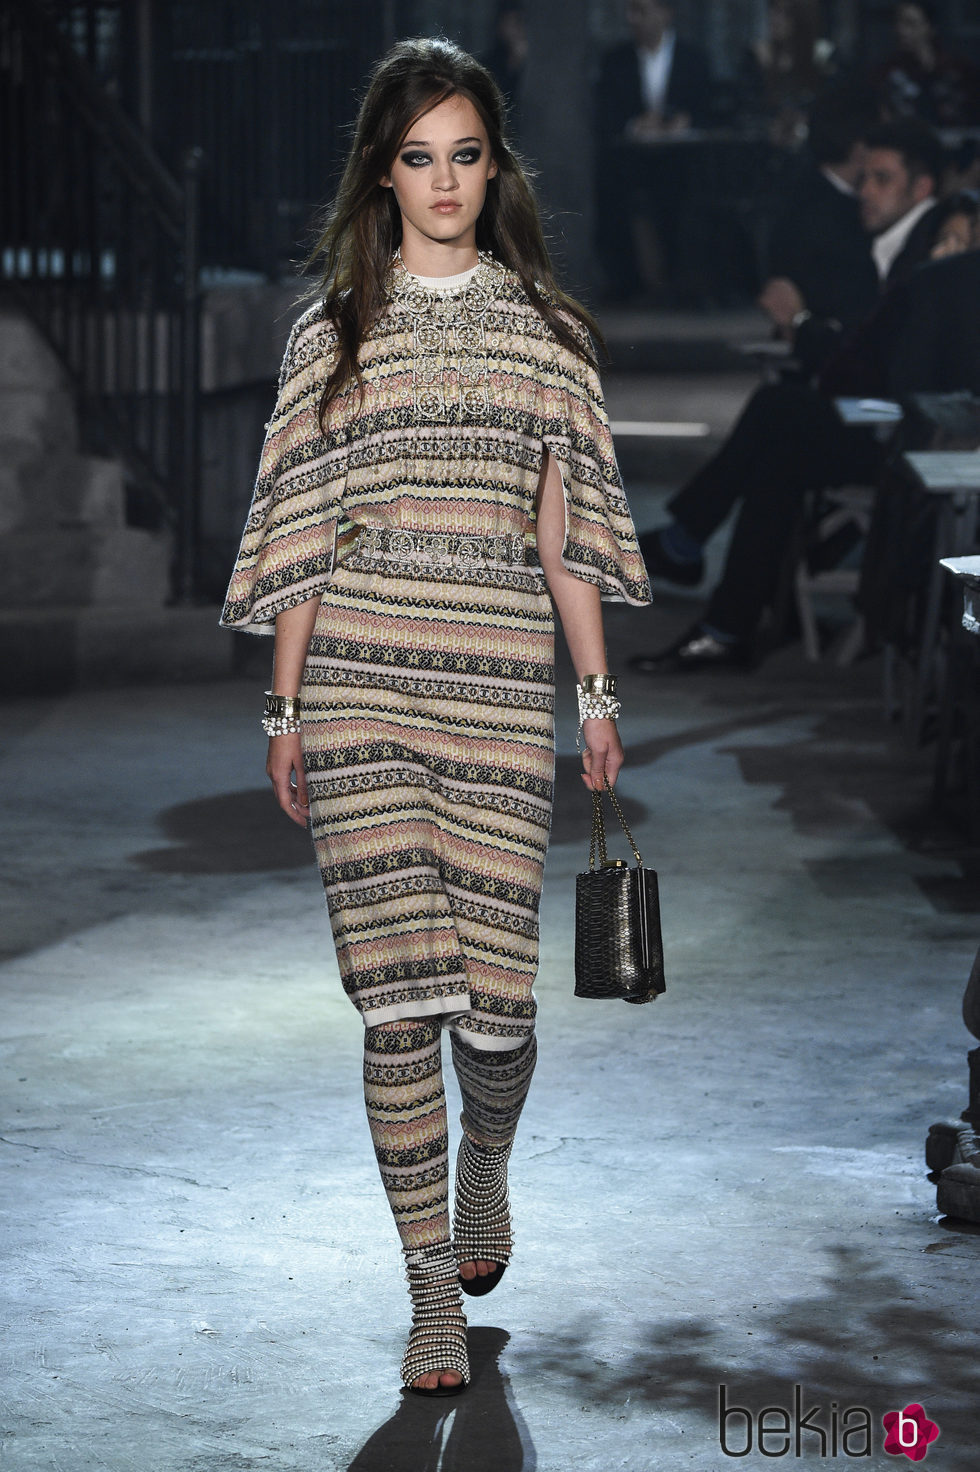 Vestido étnico de la colección 'Métiers d'Art Paris à Rome 2015/2016' de Chanel